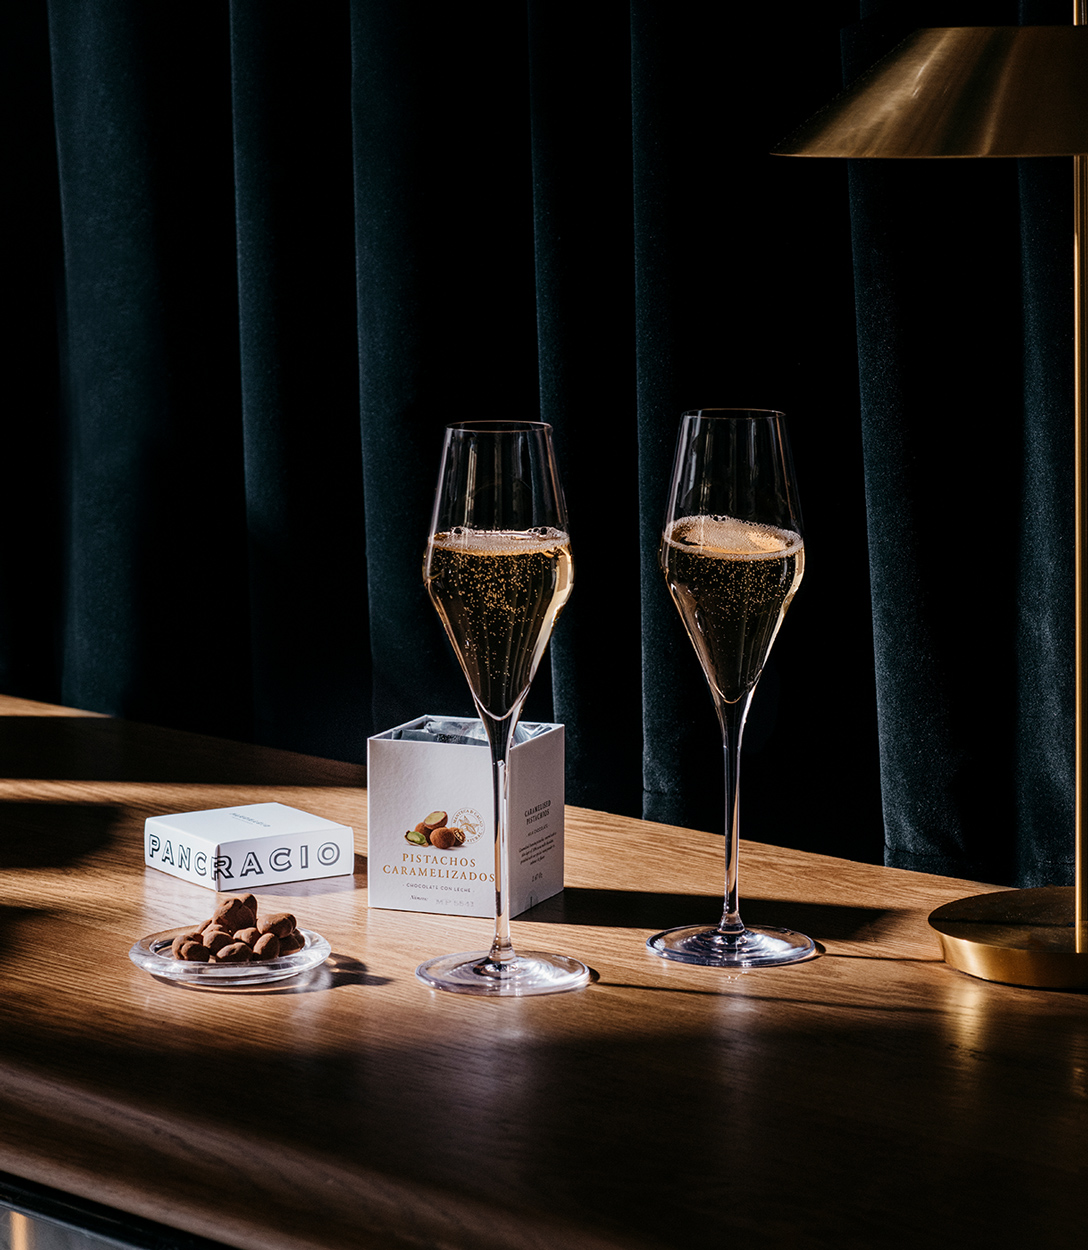 Dos copas de champagne junto a chocolates Pancracio con una luz suave y sombras